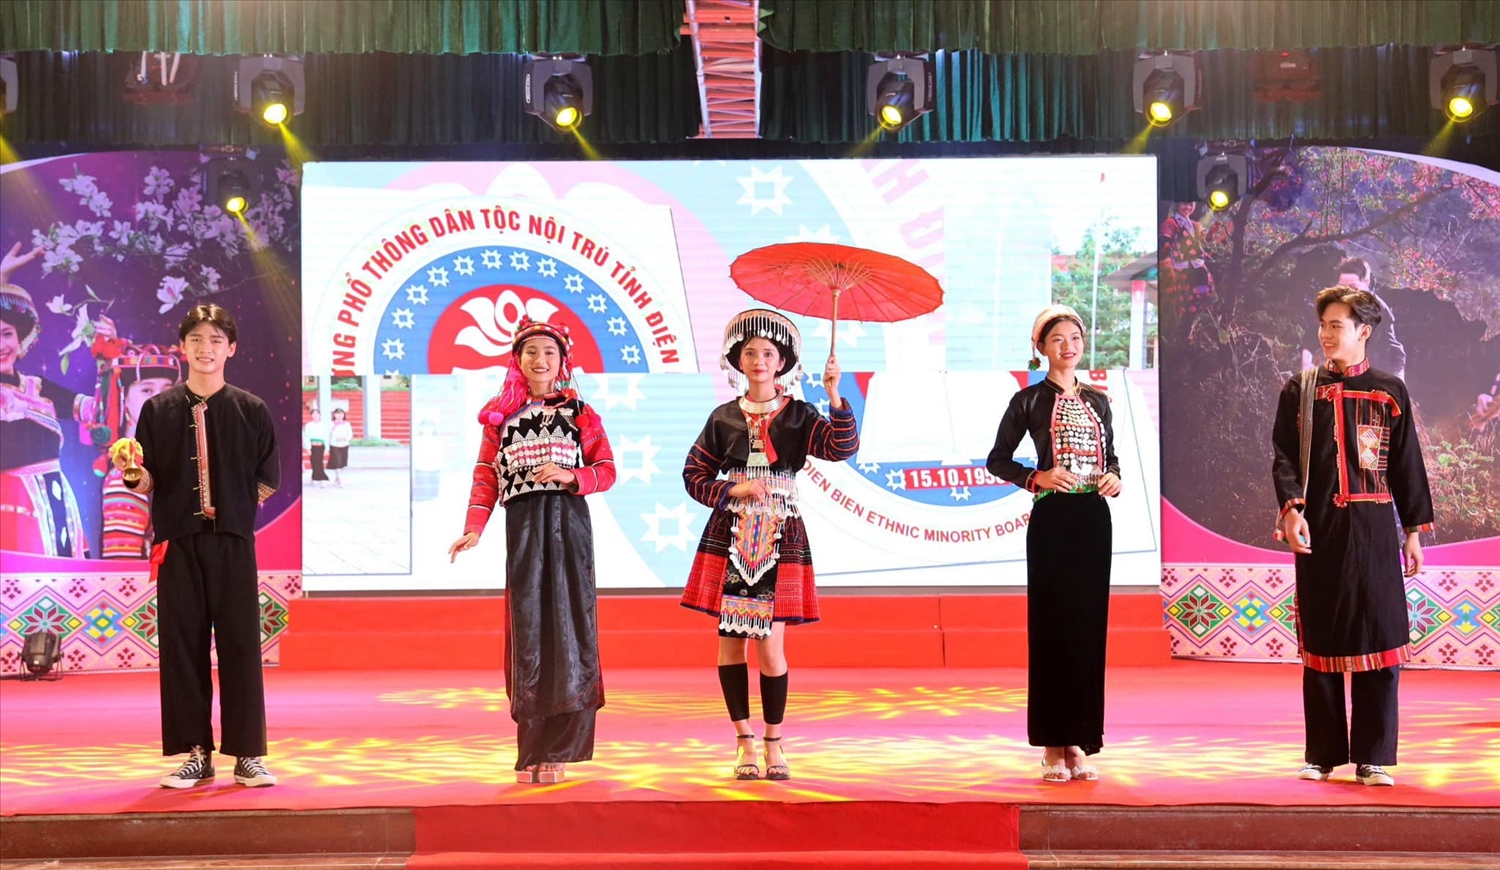 Màn dự thi trình diễn trang phục dân tộc các em học sinh Trường Phổ thông Dân tộc nội trú tỉnh Điện Biên. (Ảnh Lan Phương)